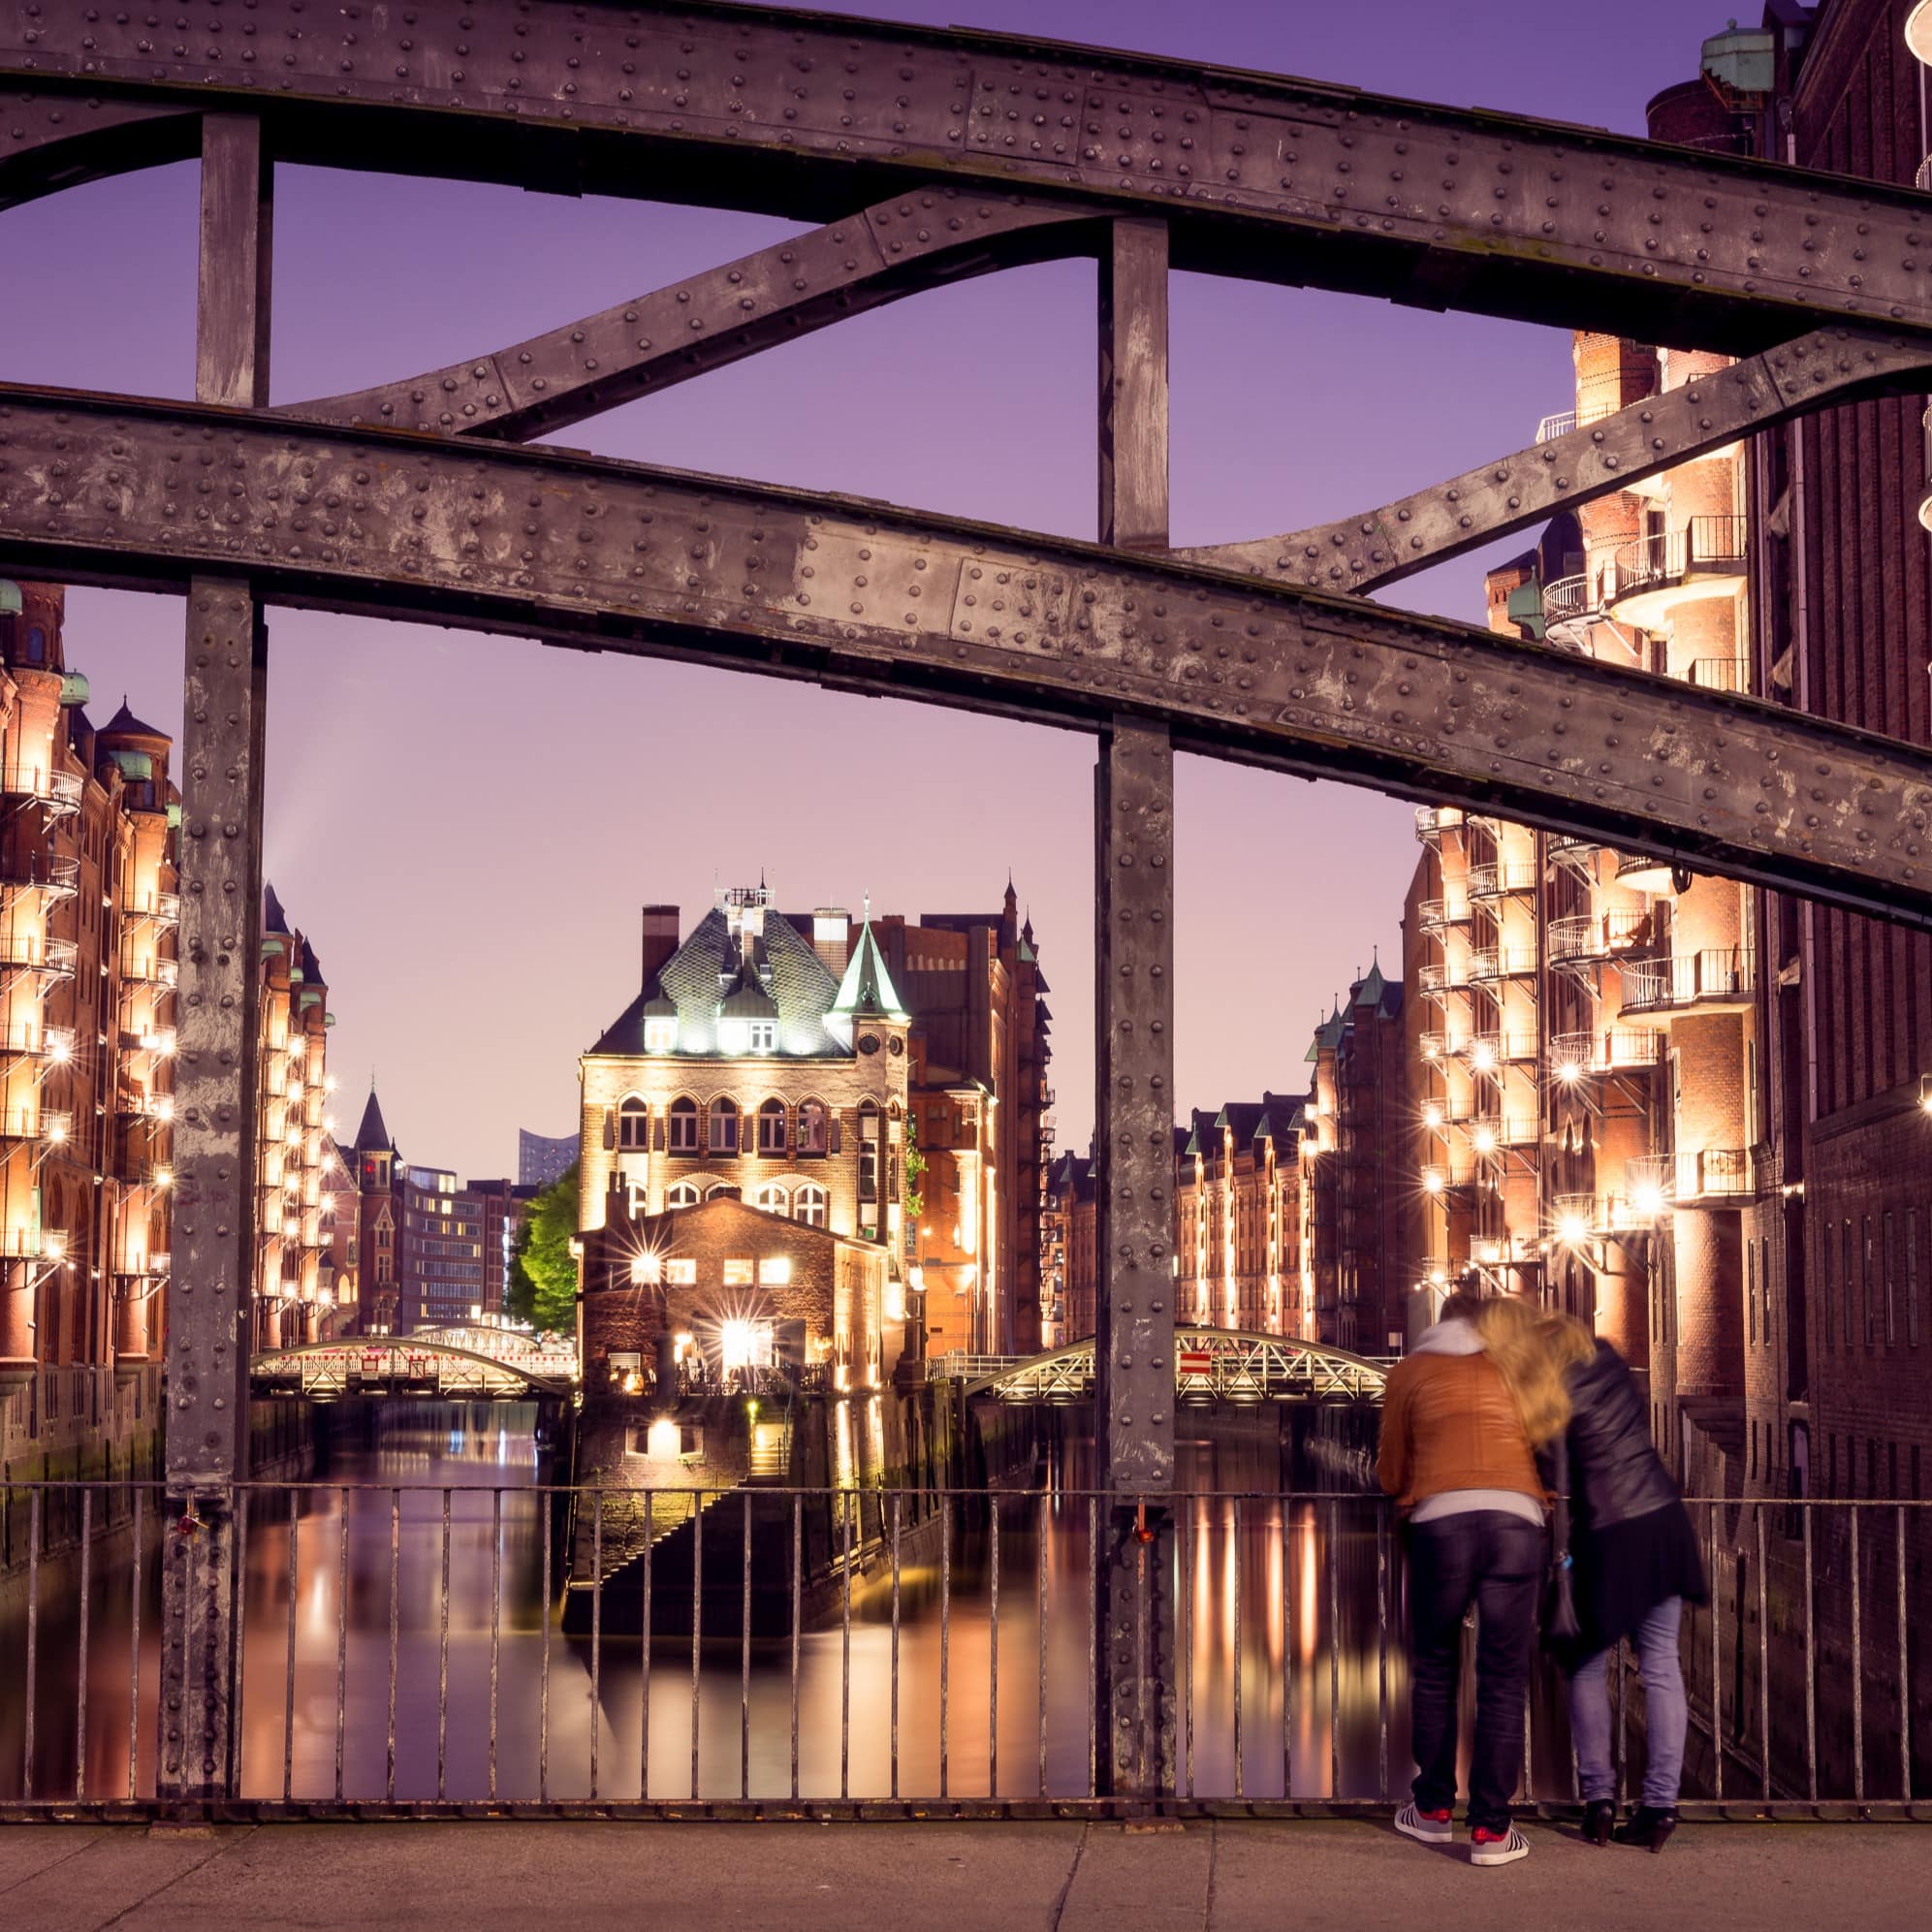 Rückenansicht: Ein Paar steht abends auf einer Brücke und schaut auf die hell erleuchtete Speicherstadt.